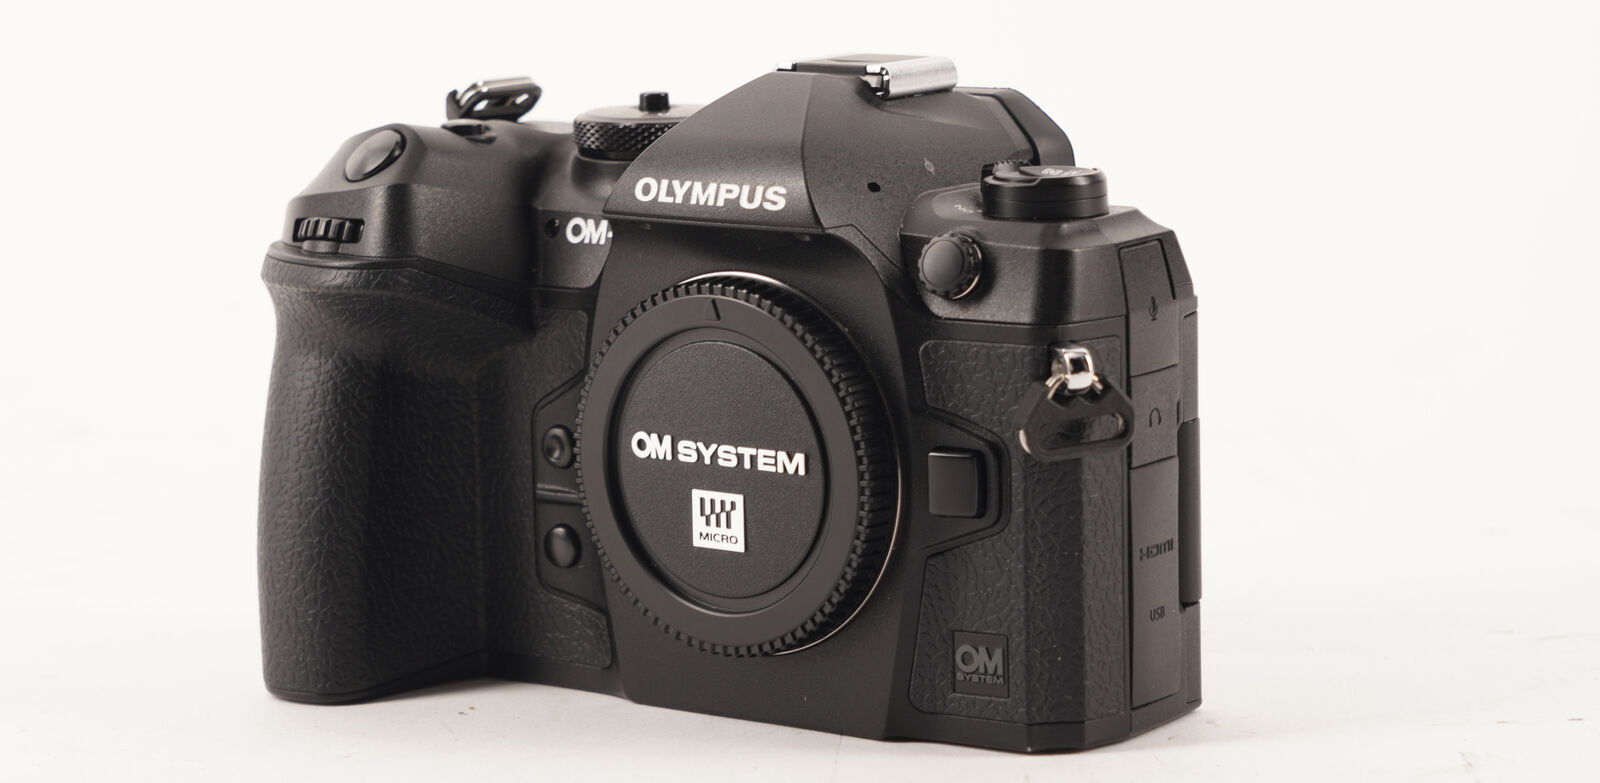 OM SYSTEM OM-1 Mirrorless Digital Camera Body